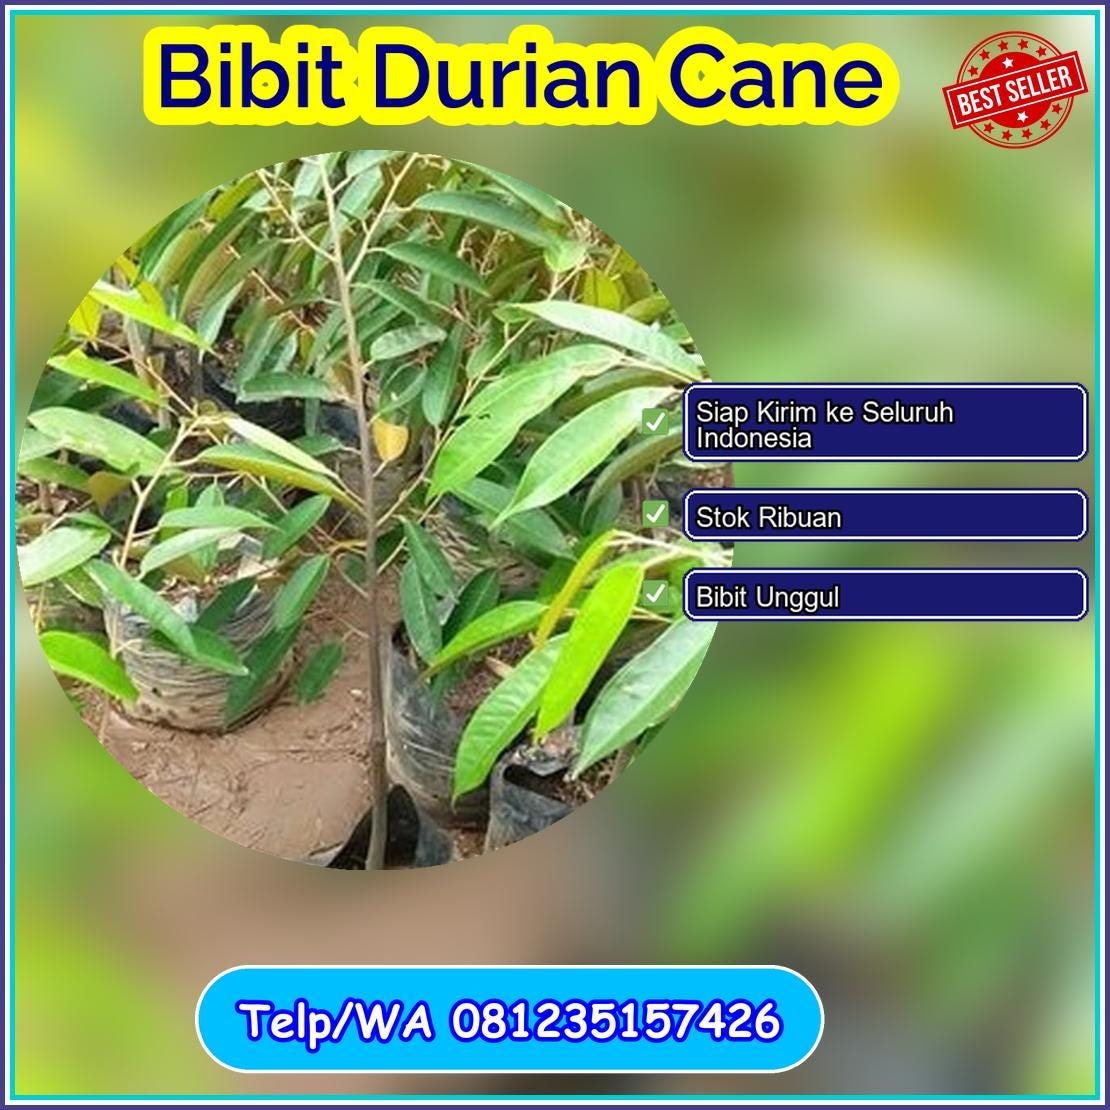 Grosir Bibit Durian Cane Tapin